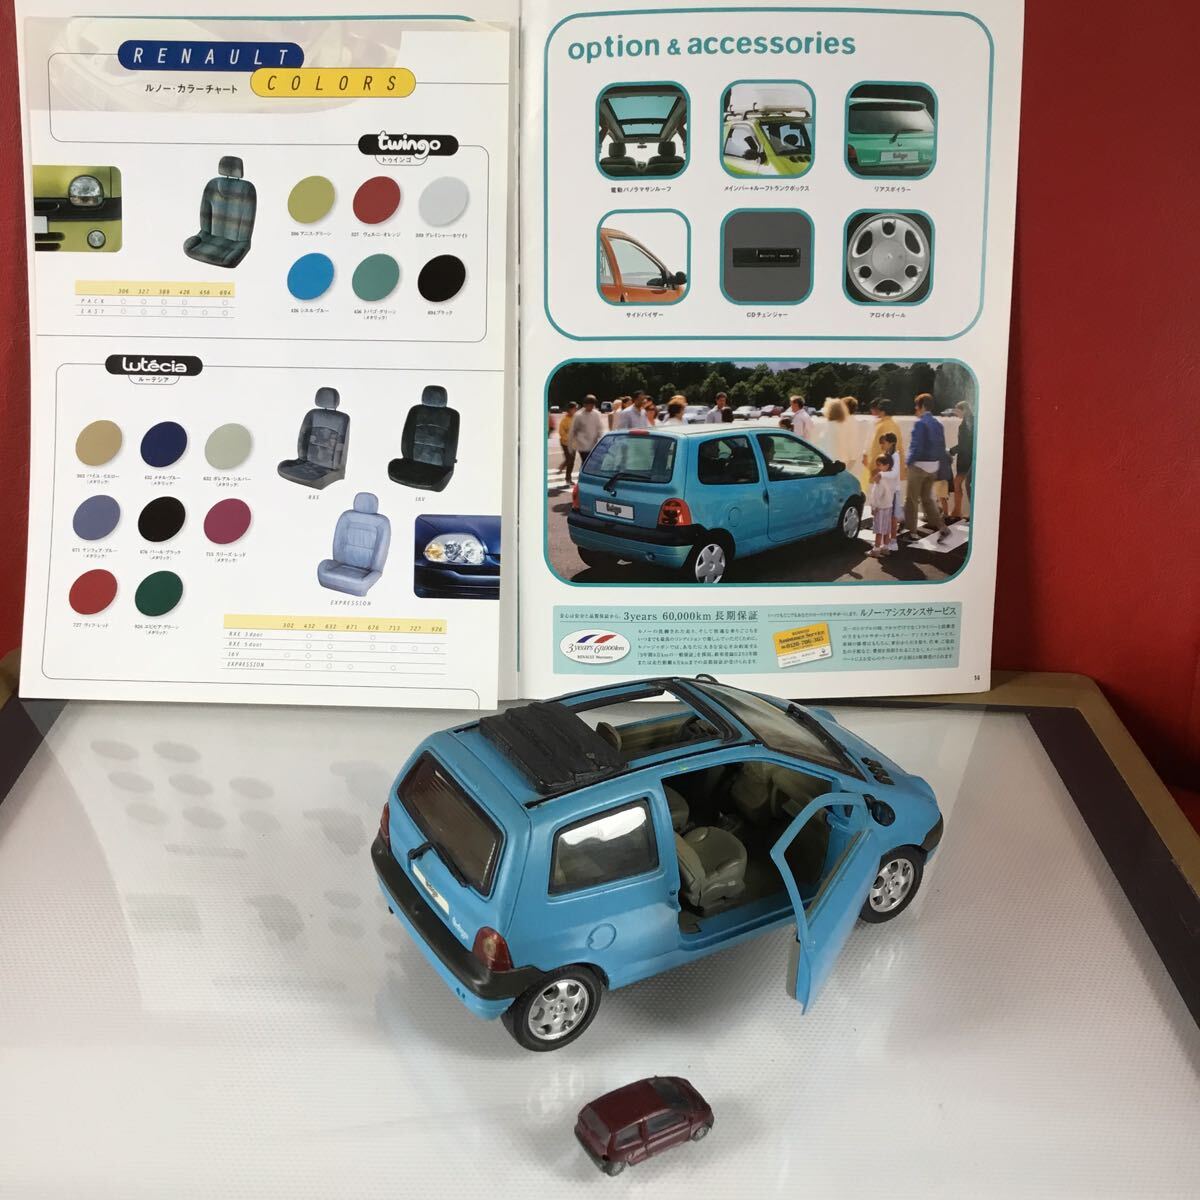  Renault Twingo миникар ×3 шт., роскошный каталог 